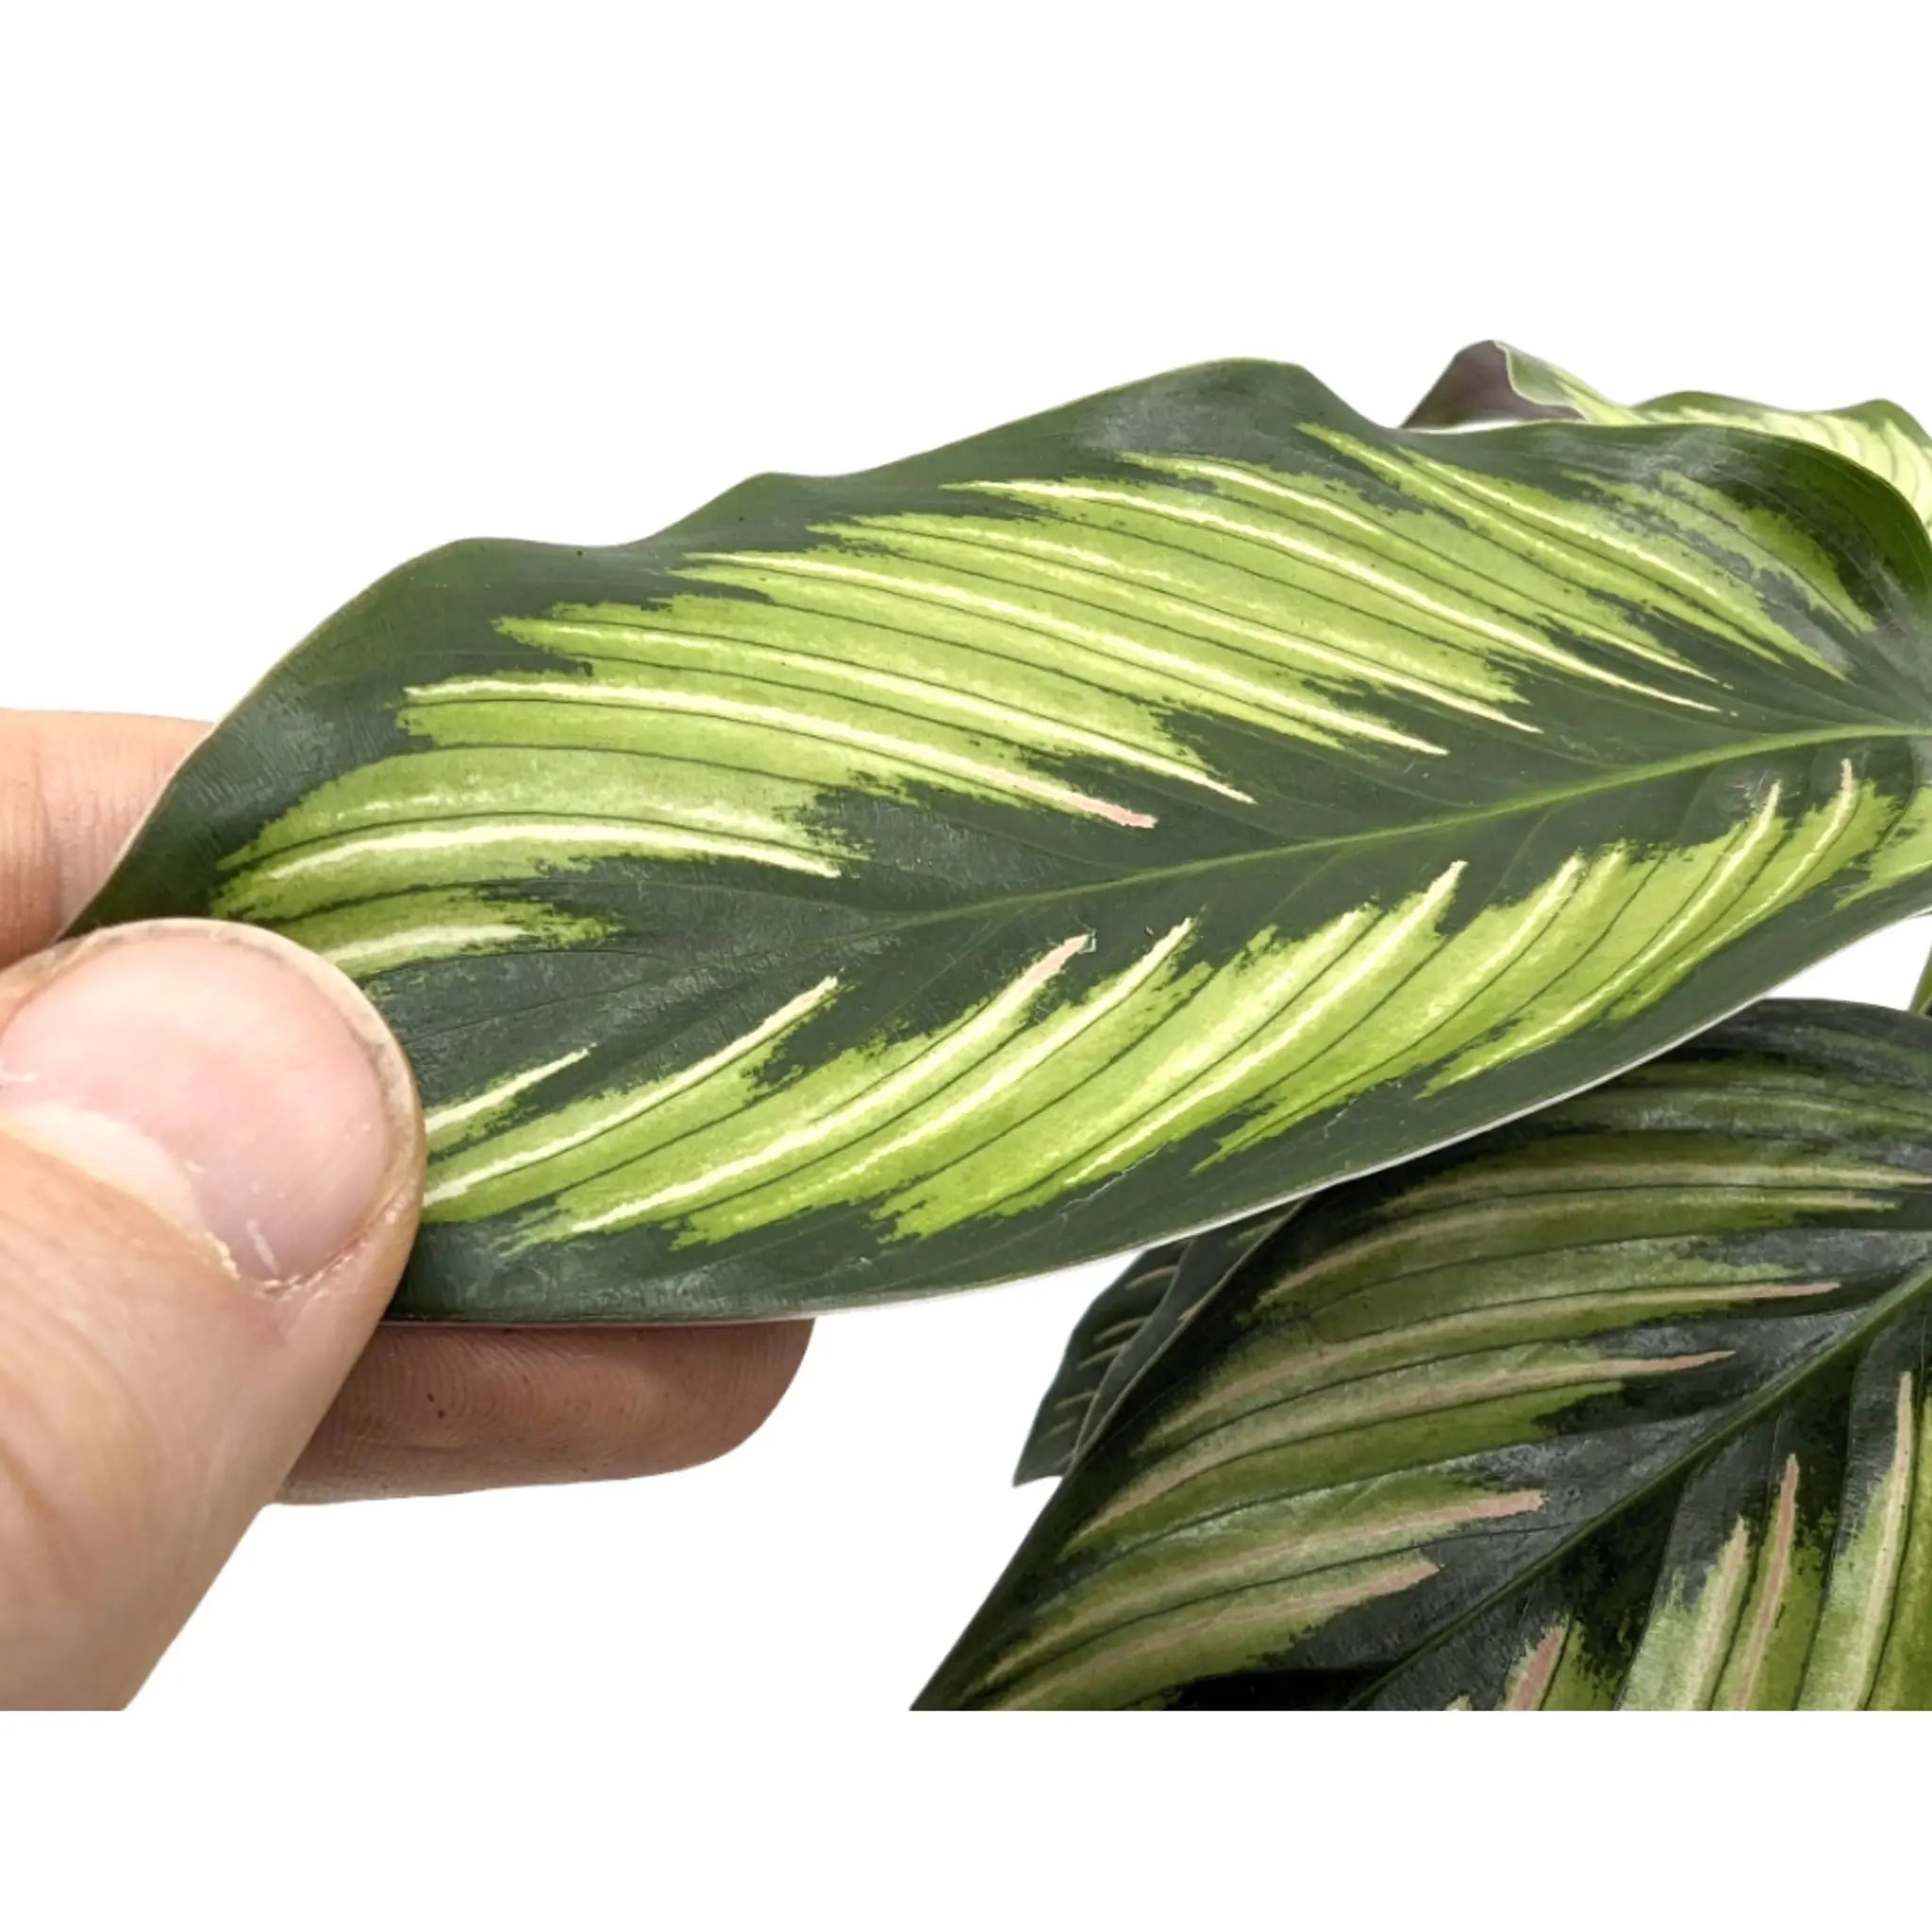 Calathea Beautystar - Prayer Plant Leaf Culture